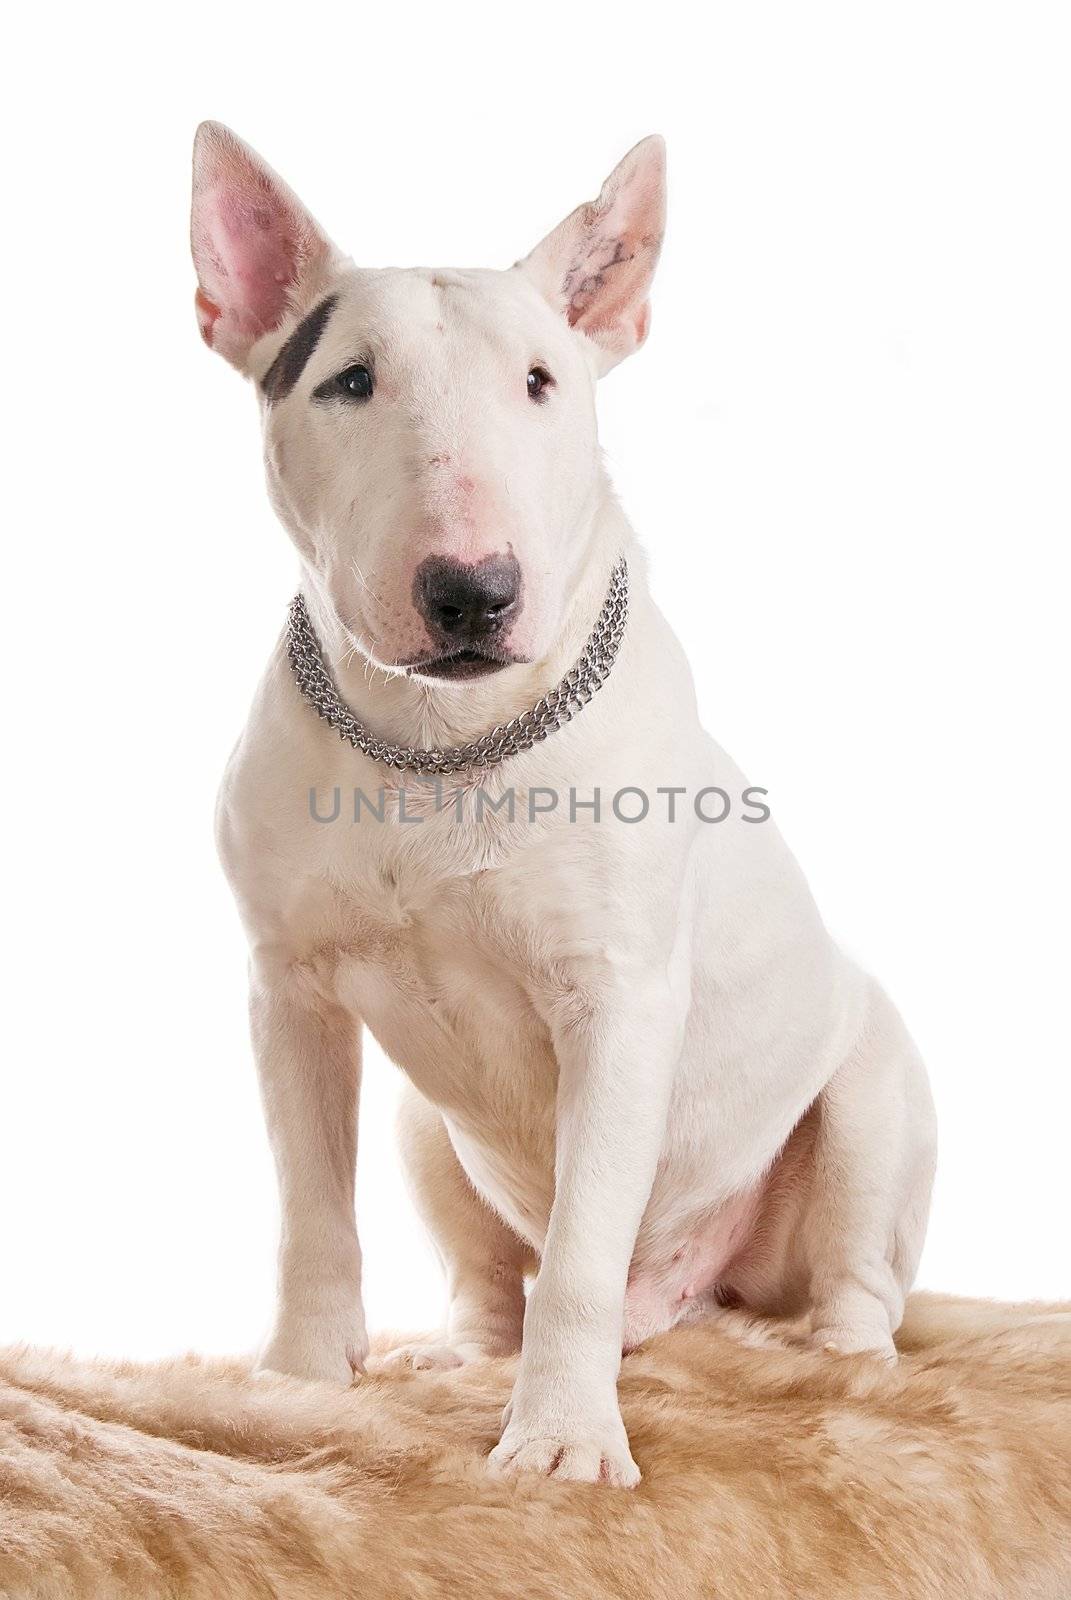 White bull terrier on a white background